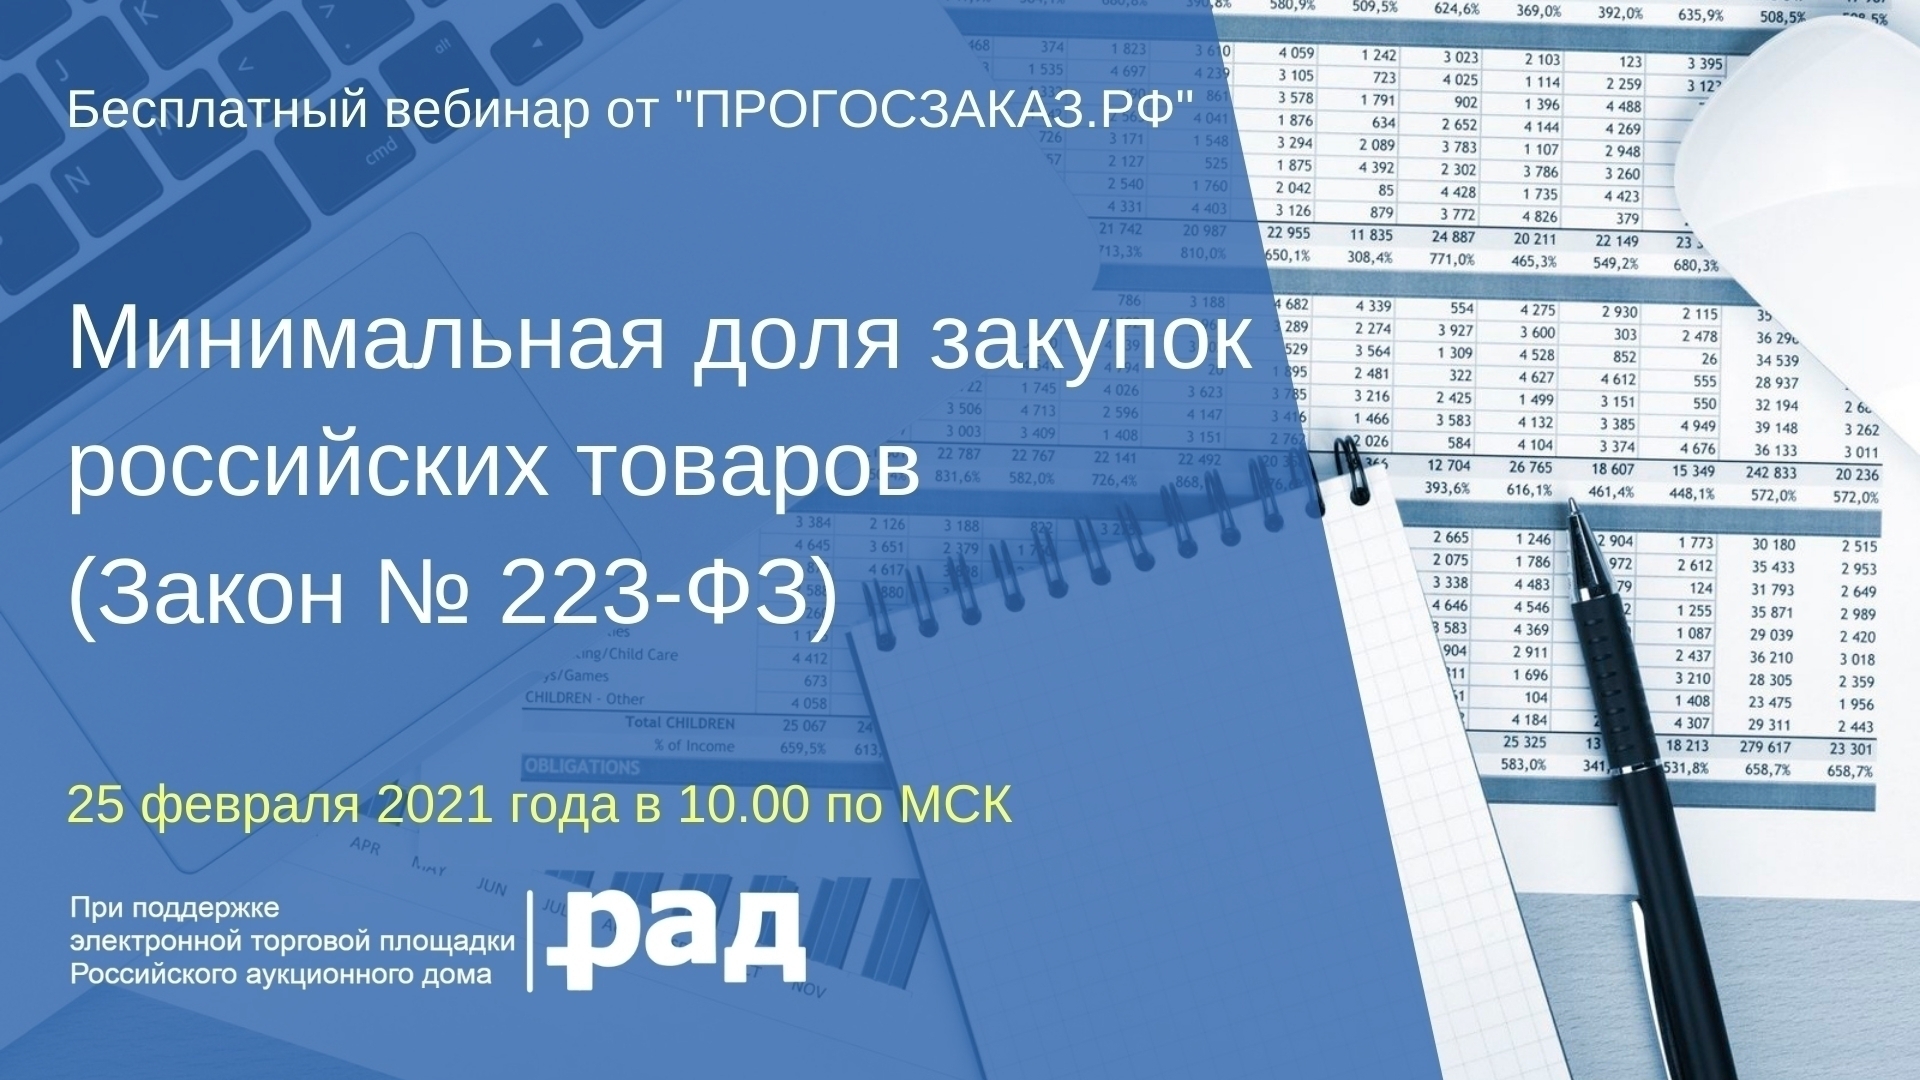 25 февраля 2021 года в 10:00 по МСК состоялся вебинар на тему «Минимальная доля закупок российских товаров» (Закон № 223-ФЗ)